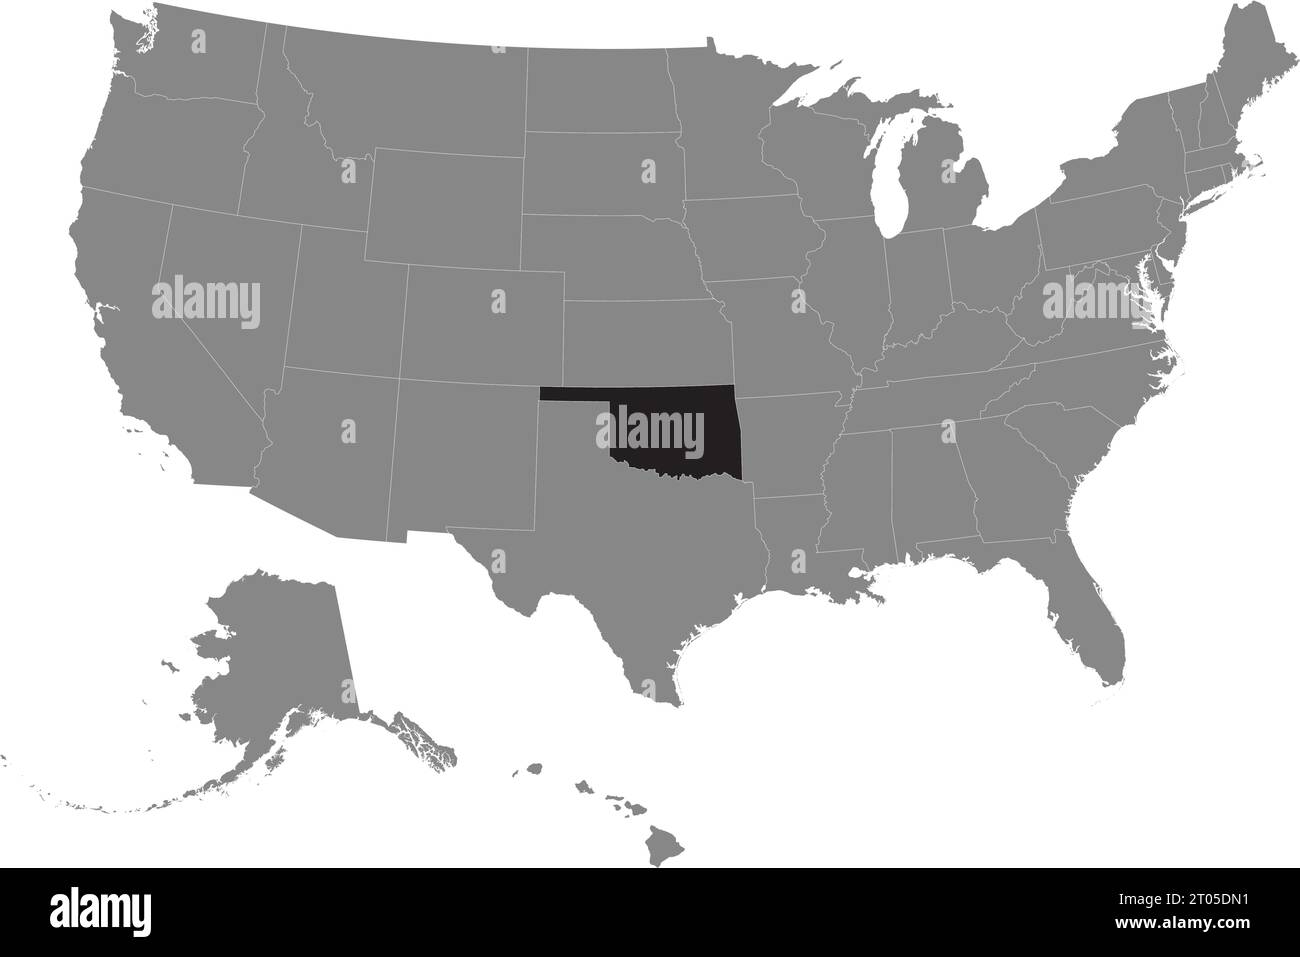 Schwarze CMYK-Bundeskarte von OKLAHOMA in detaillierter grauer, leerer politischer Karte der Vereinigten Staaten von Amerika auf transparentem Hintergrund Stock Vektor